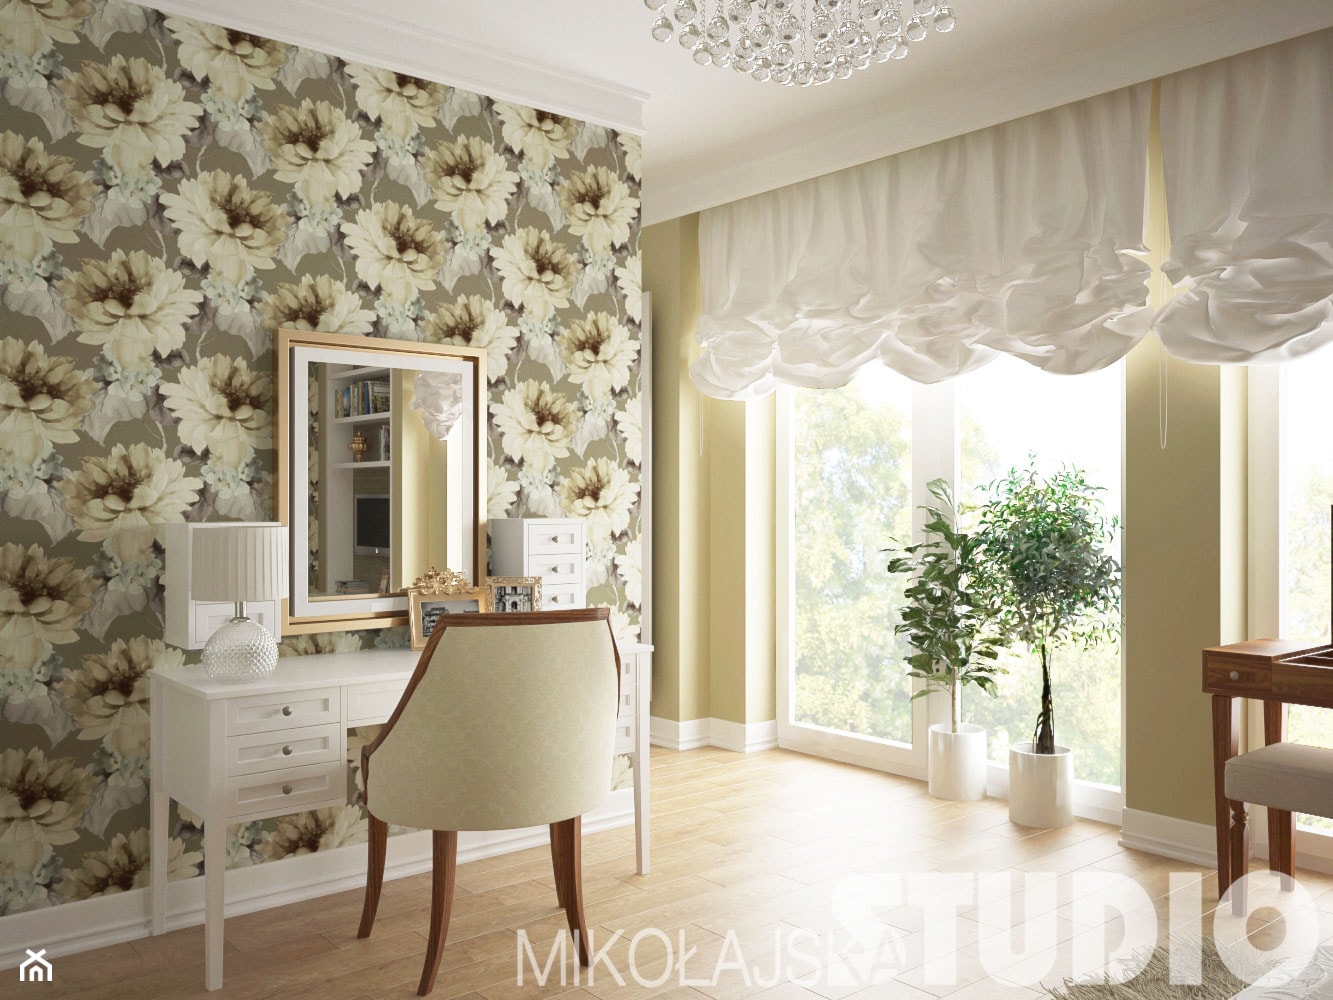 Sypialnia w stylu klasycznym -toaletka - zdjęcie od MIKOŁAJSKAstudio - Homebook